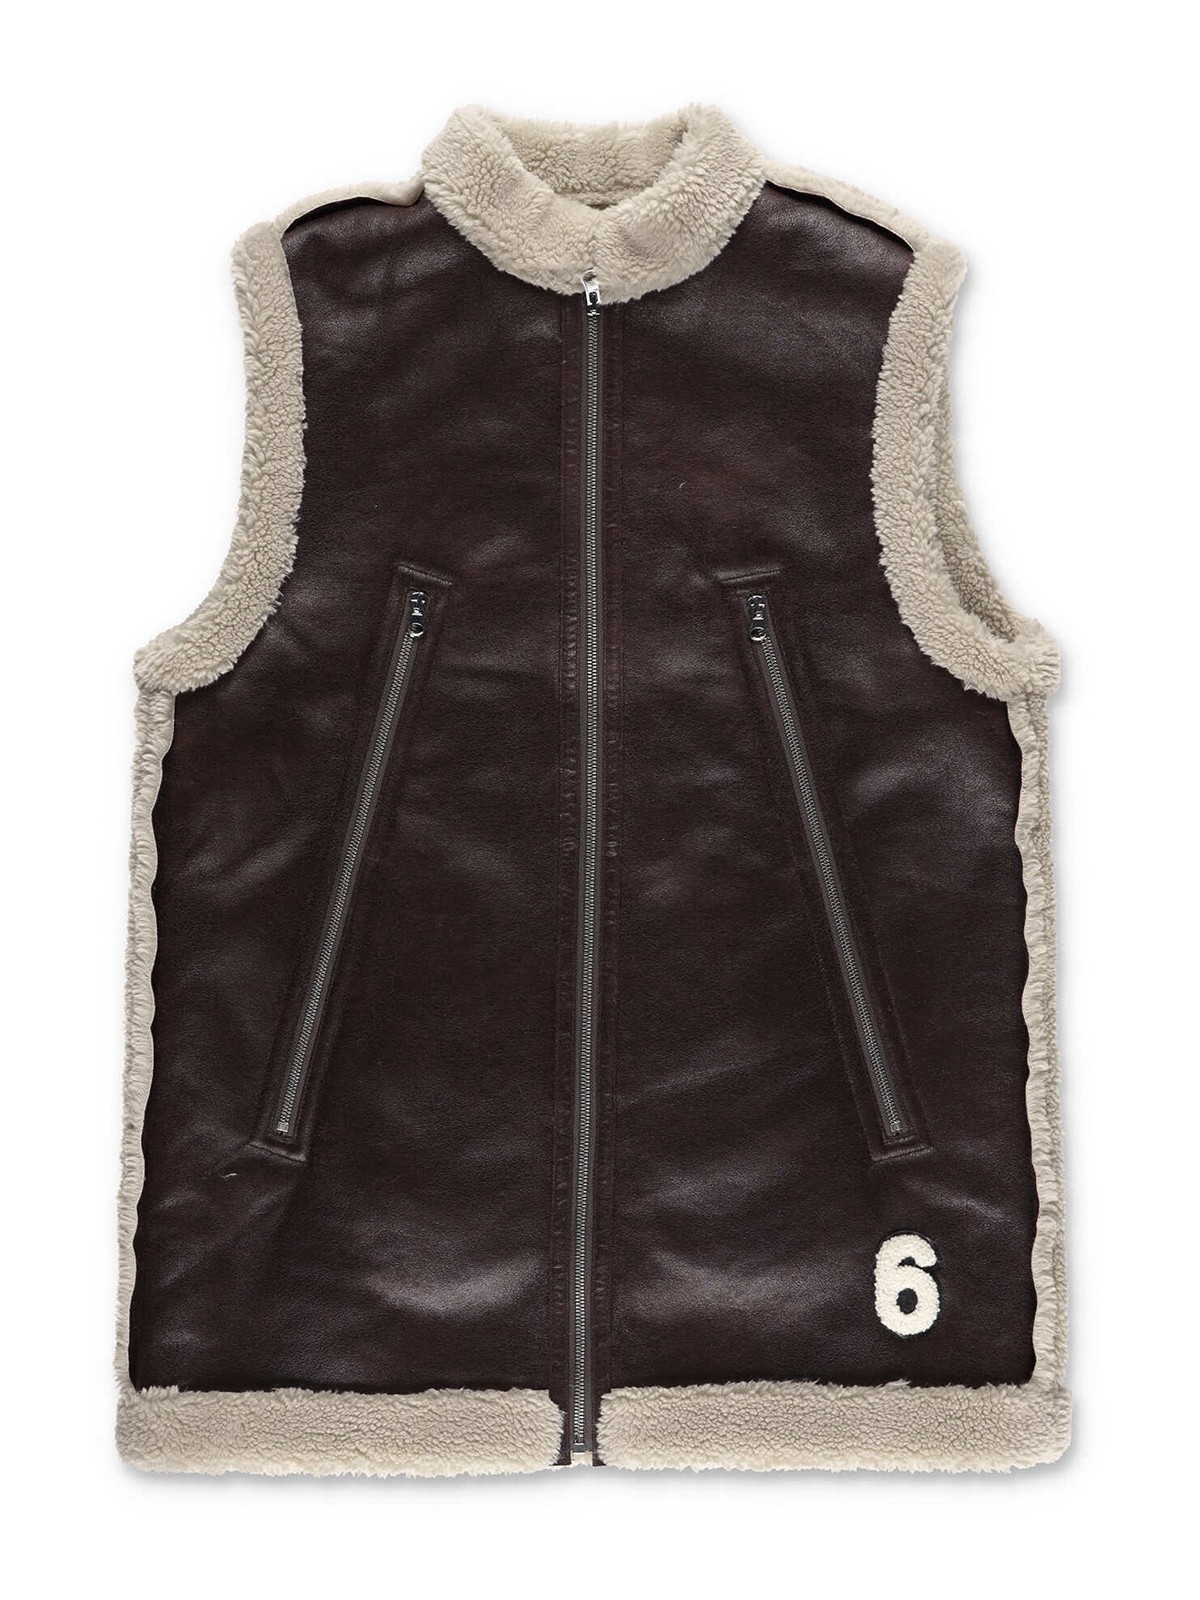 MM6 maison margiela faux leather vest肩幅38